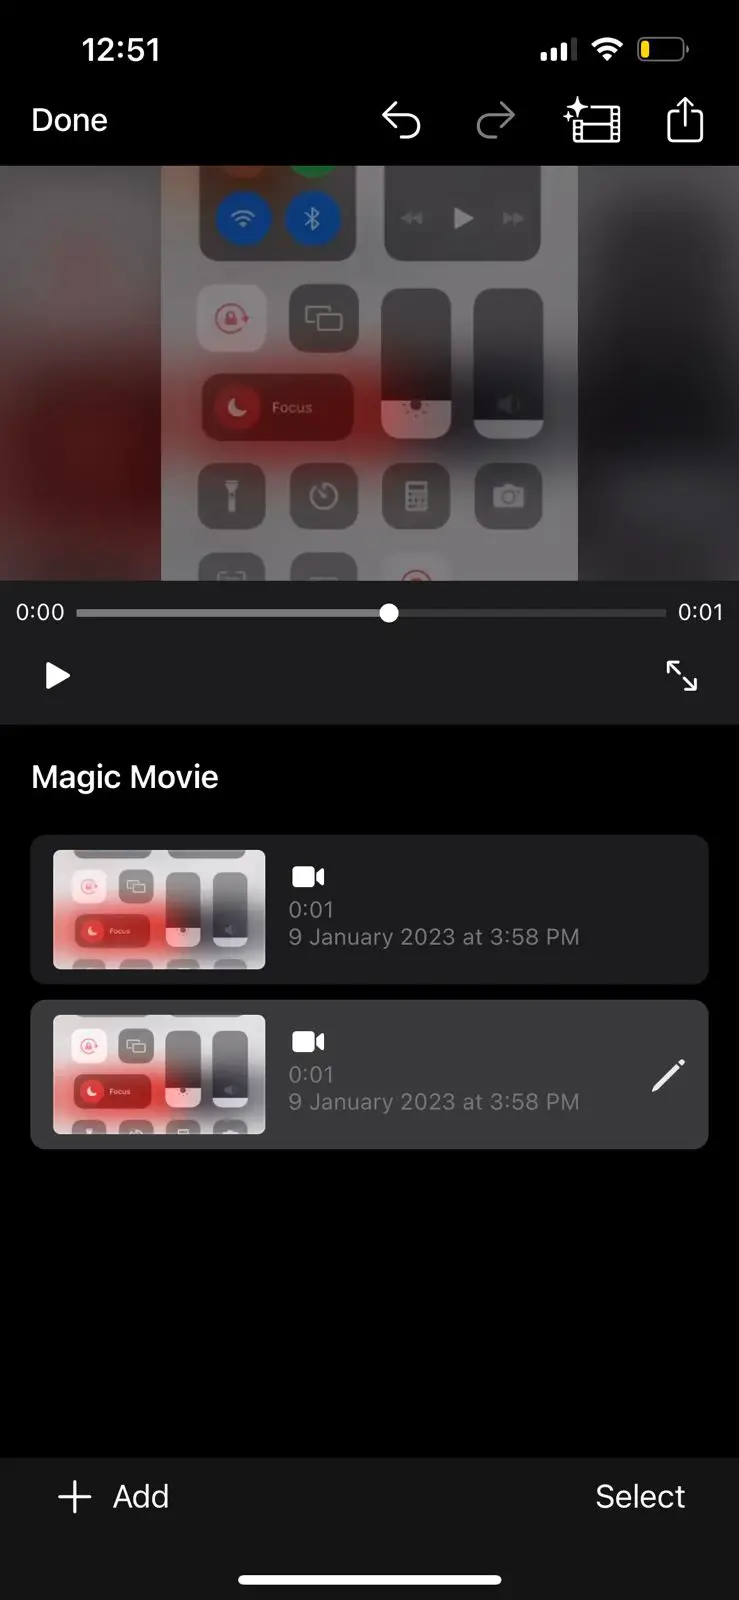 edit videos using iMovie